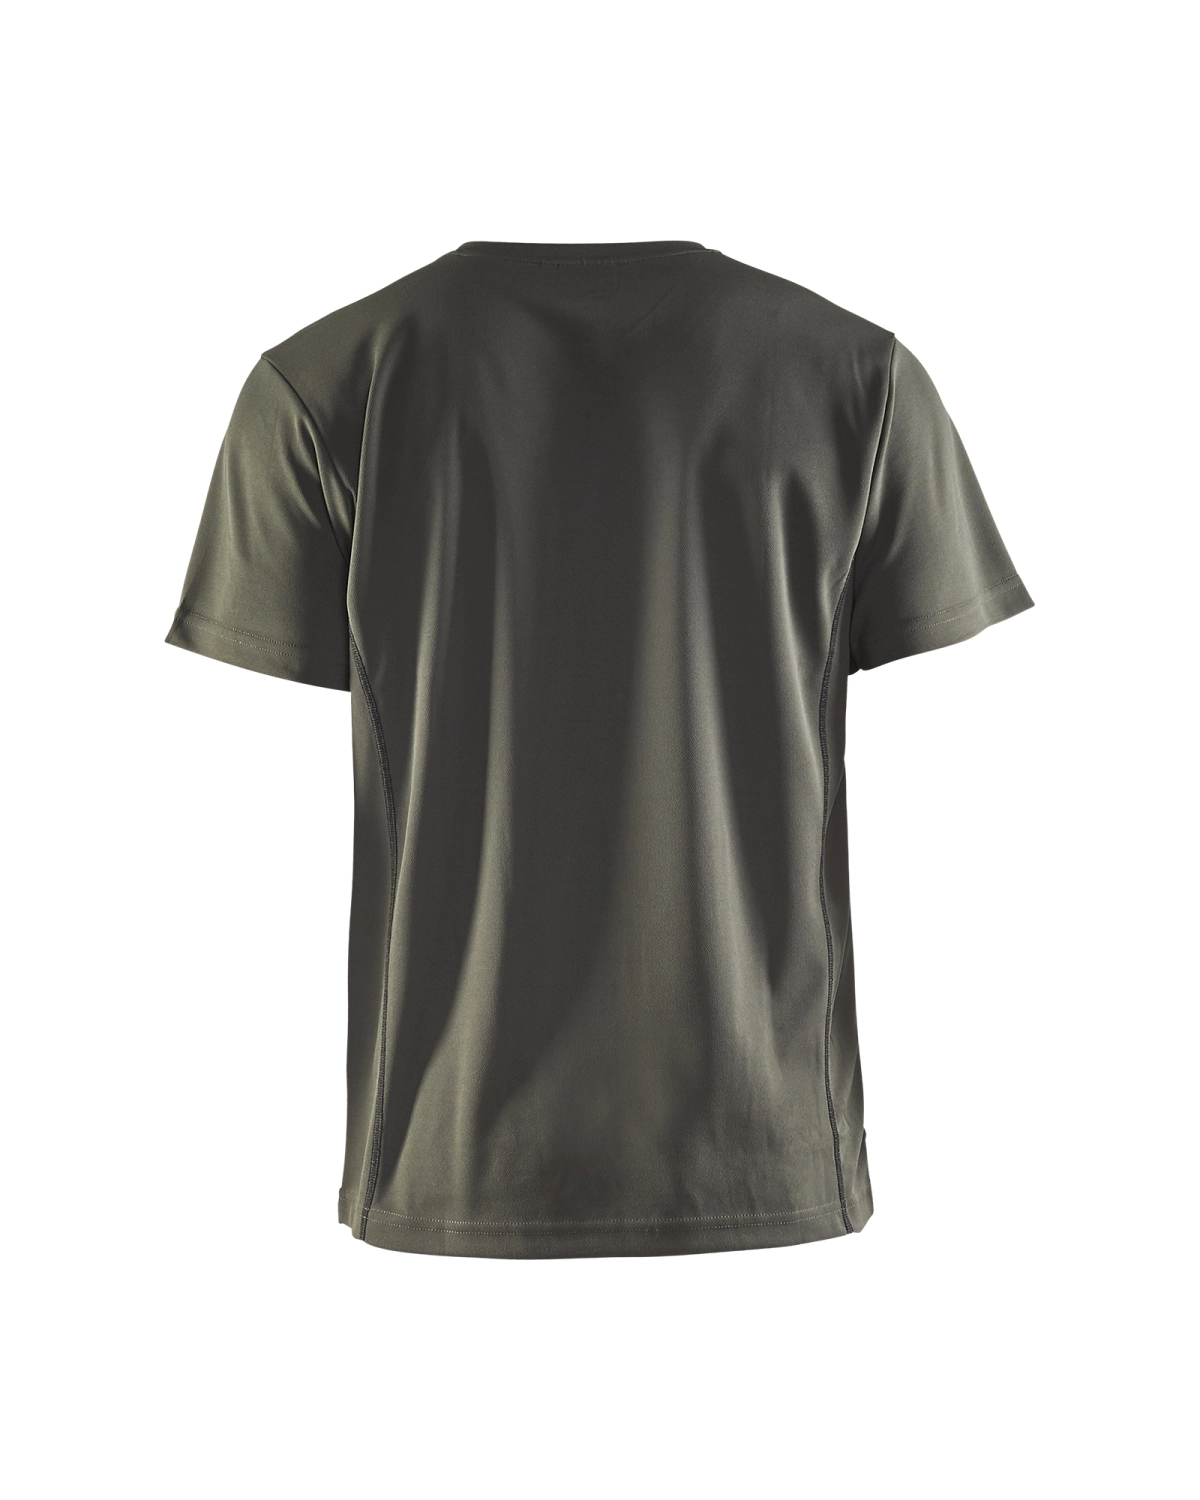 Blåkläder 3323 UV t-shirt - army groen - XL-image